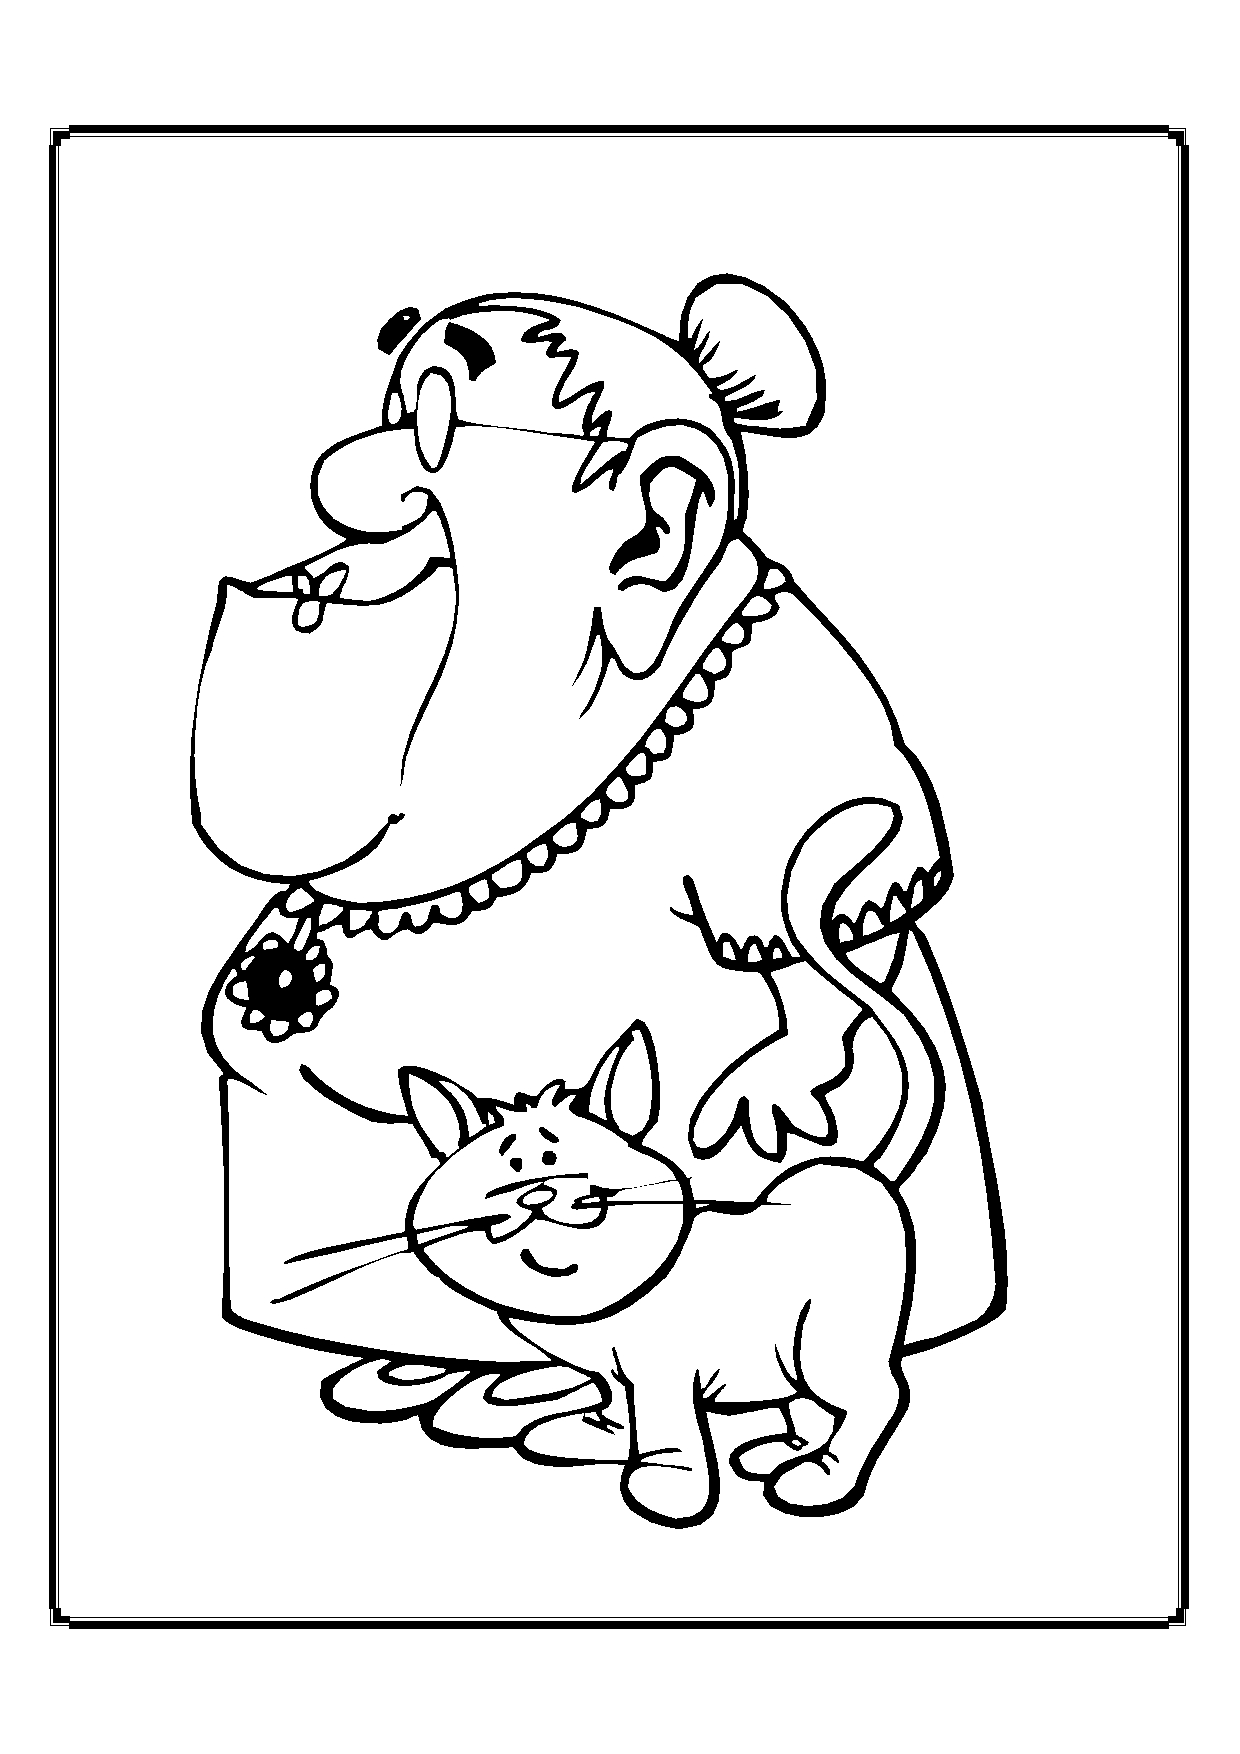 Kolorowanka kot z uniesionym ogonem stoi przy bardzo starej babci z dużą głową i szczęką